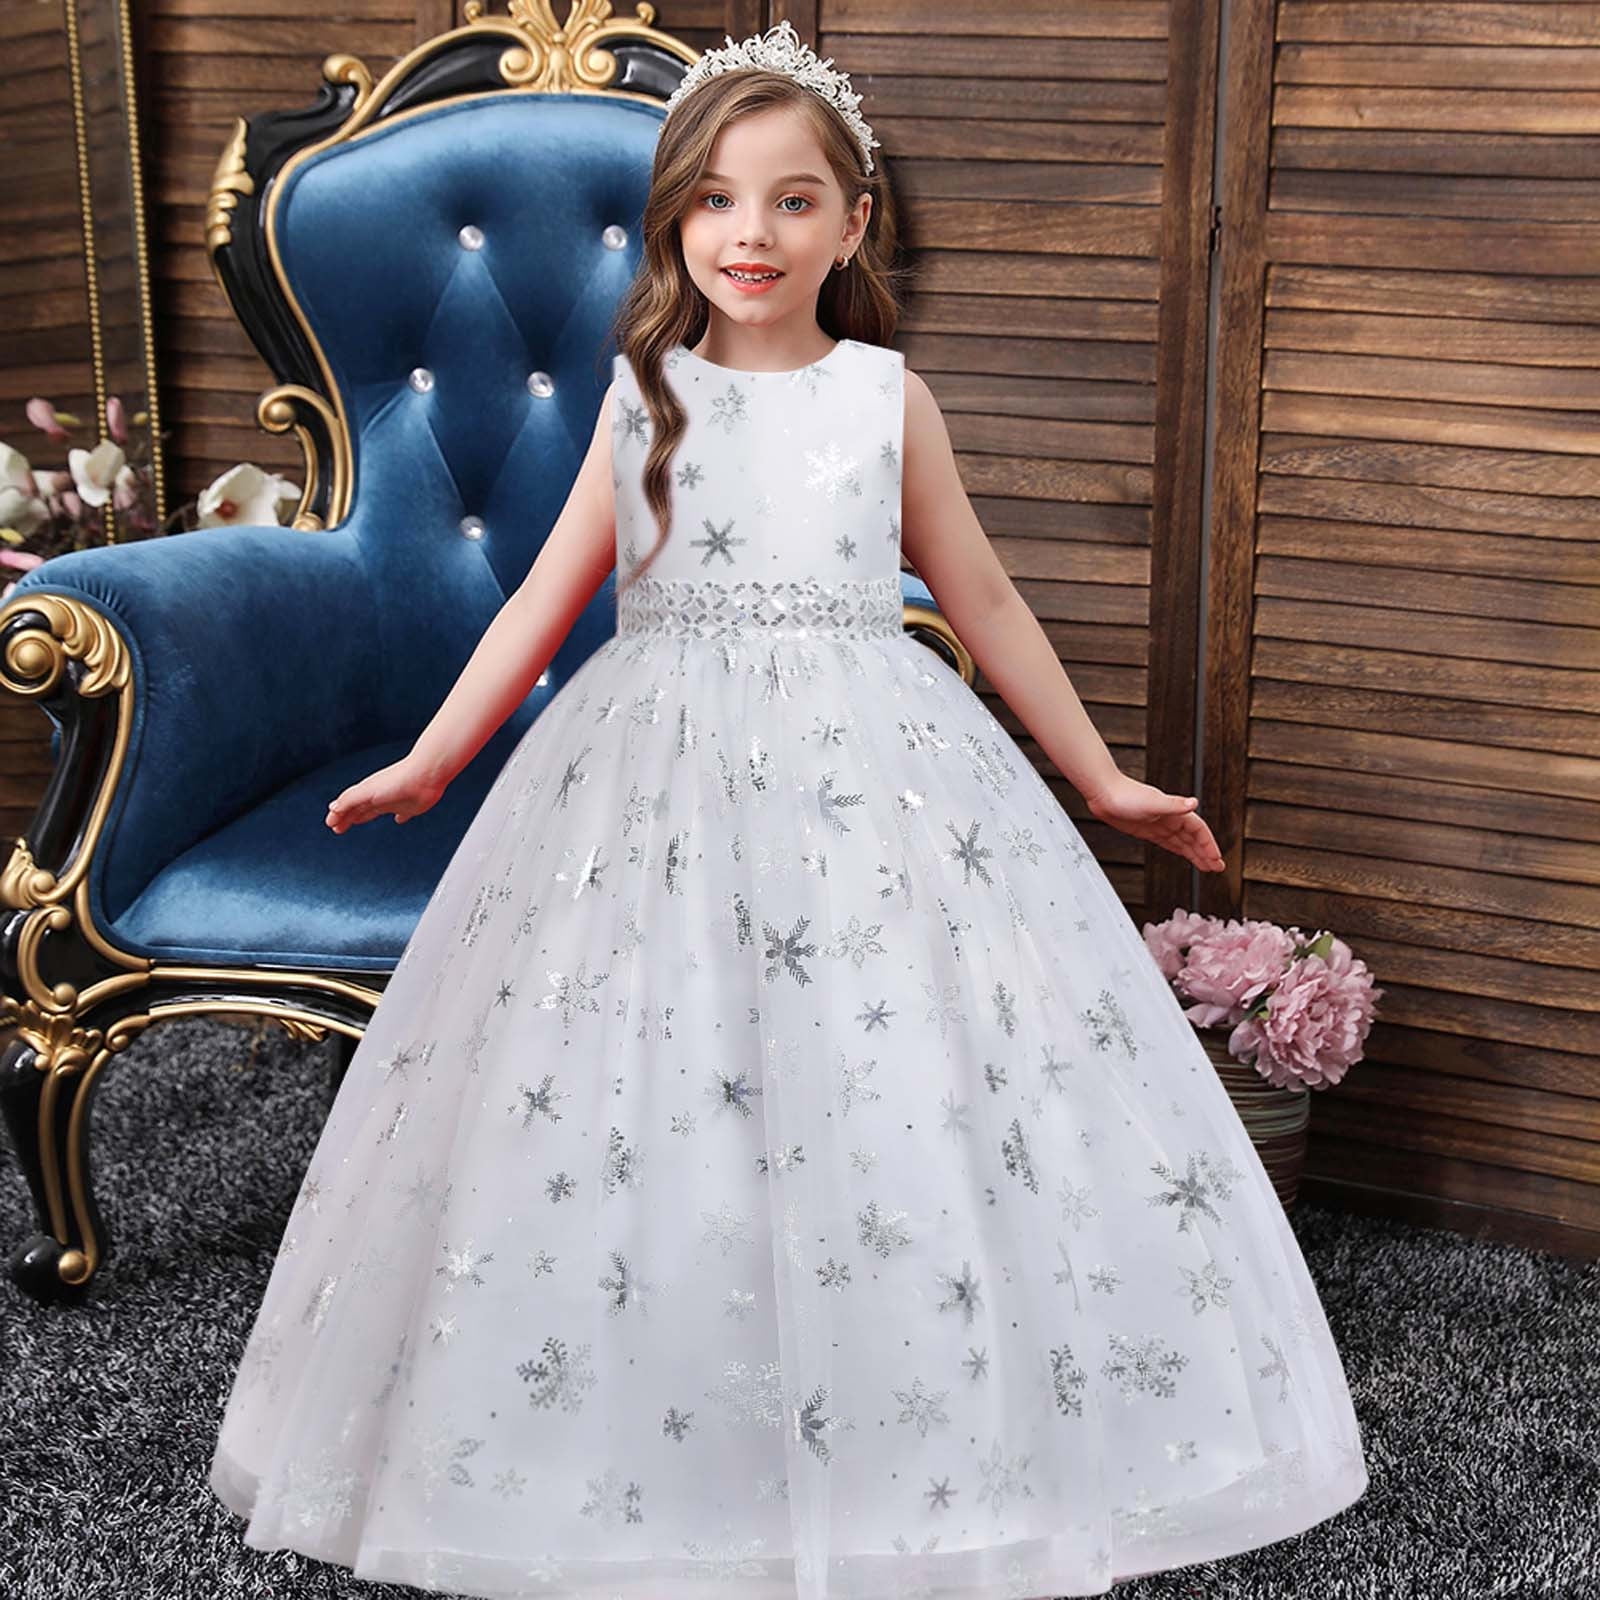 dresses for little girls